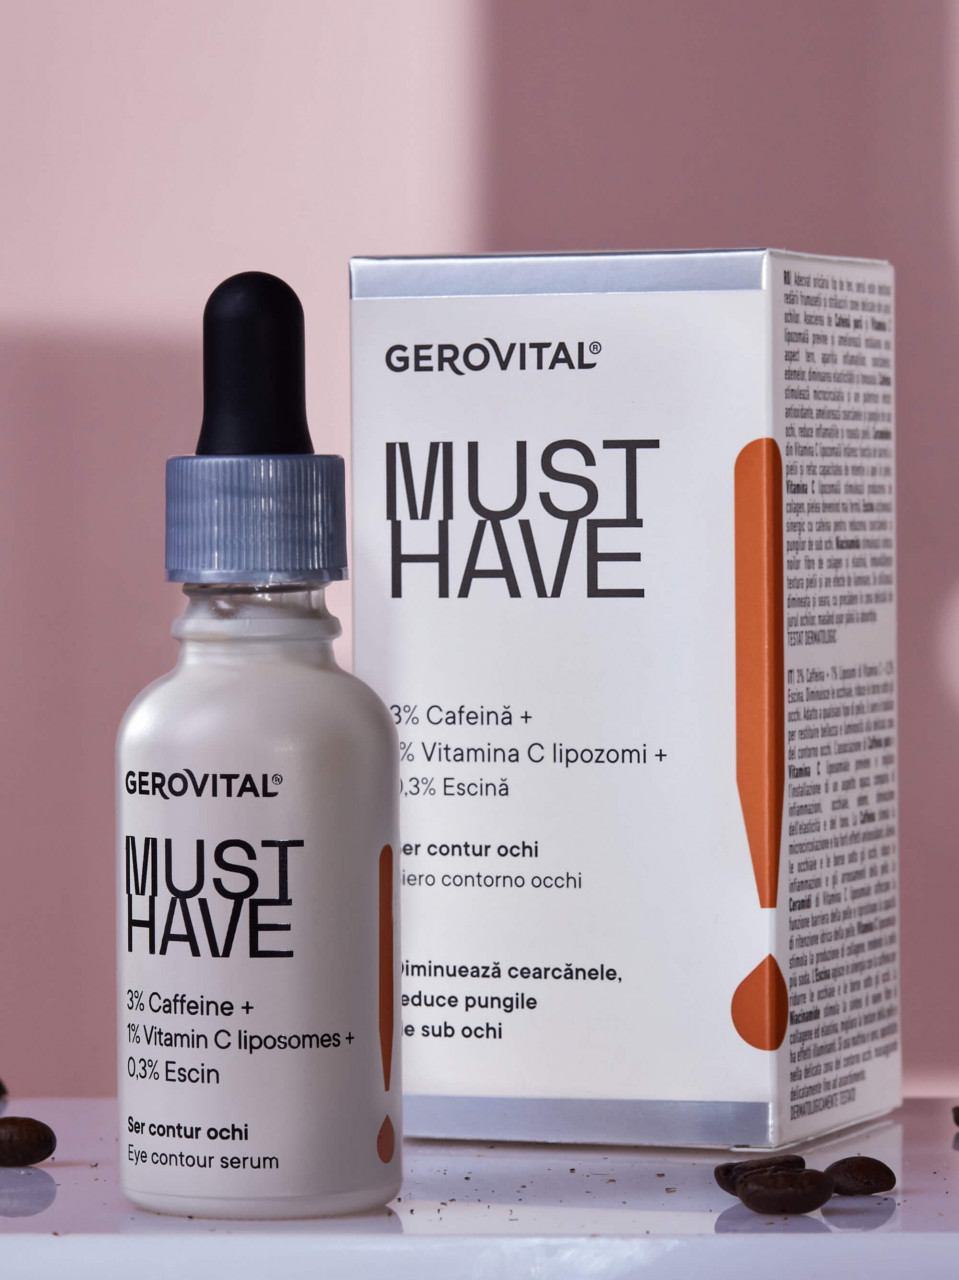 Gerovital Must Have Ser contur ochi - 30 ml